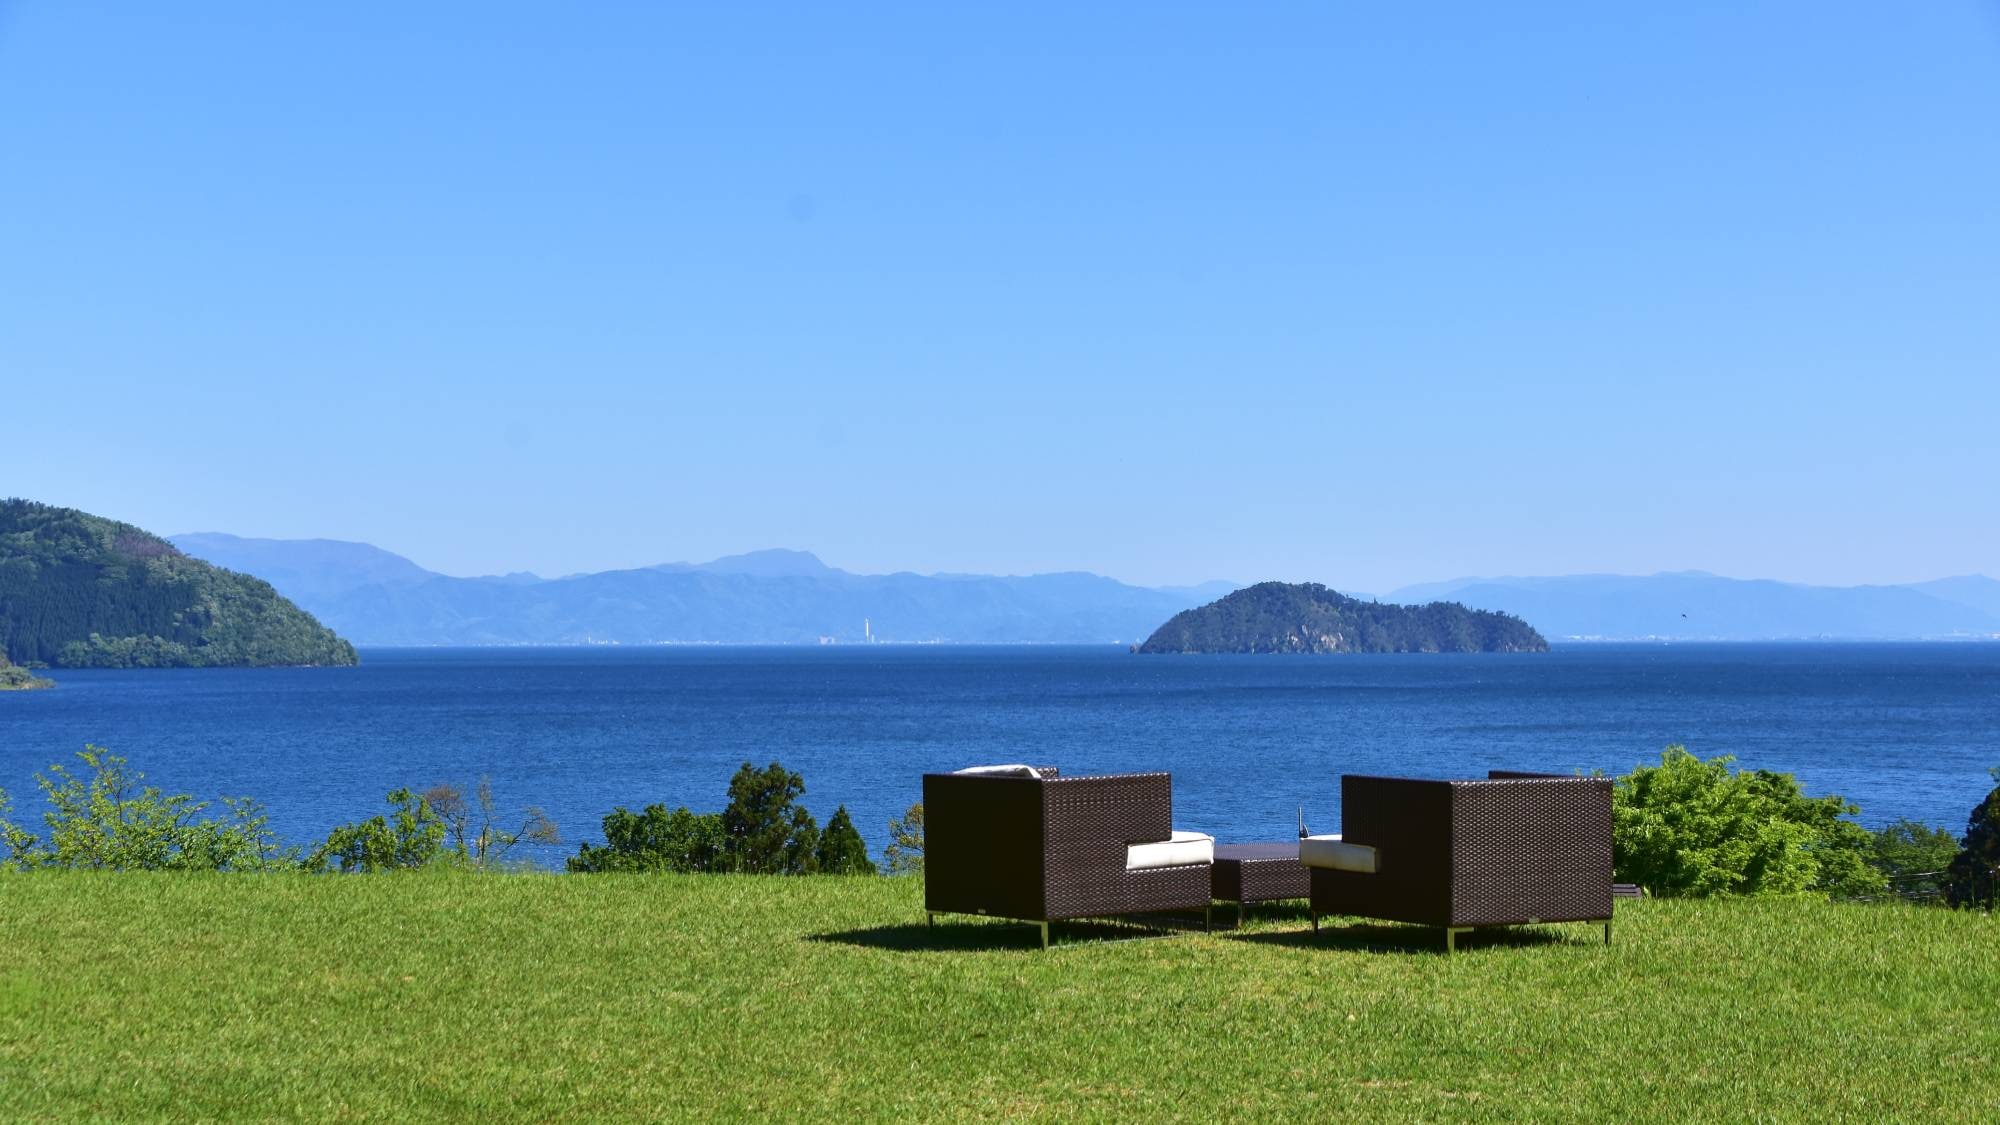 從山上俯瞰琵琶湖和築部島的壯麗景色